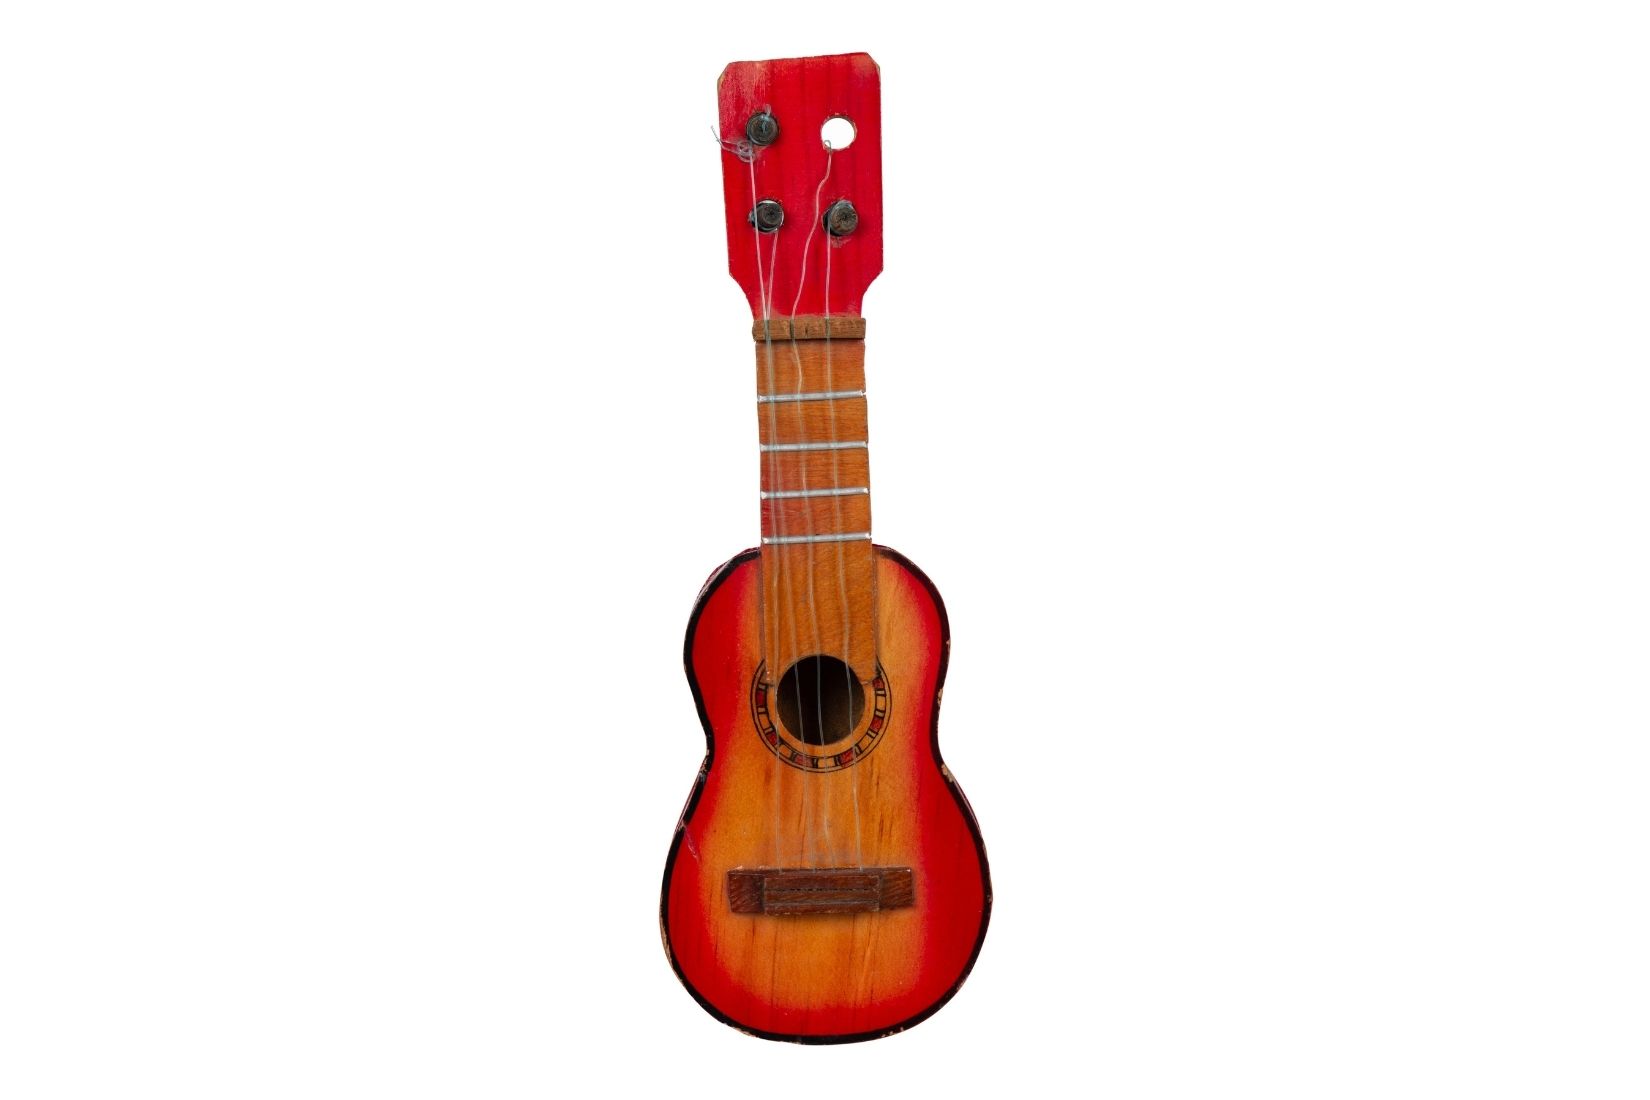 Guitarra de madera. Artesano y procedencia desconocidos. Donante Nina Shor. Col. AmigosMAP. (Foto: EKV).